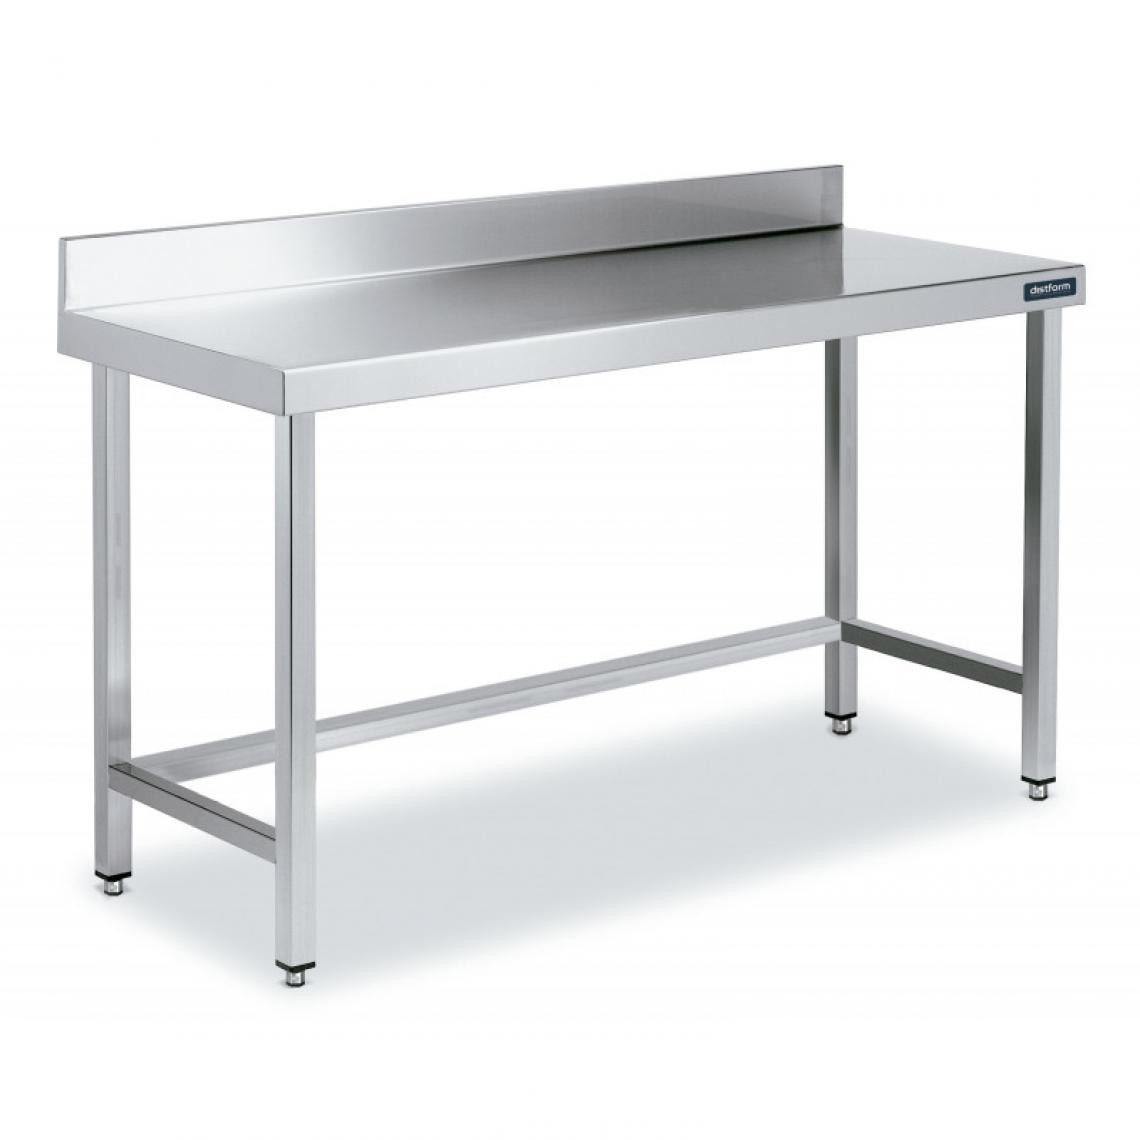 DISTFORM - Table Inox de Travail avec Dosseret Gamme 900 - Distform - Acier inoxydable1400x900 - Tables à manger